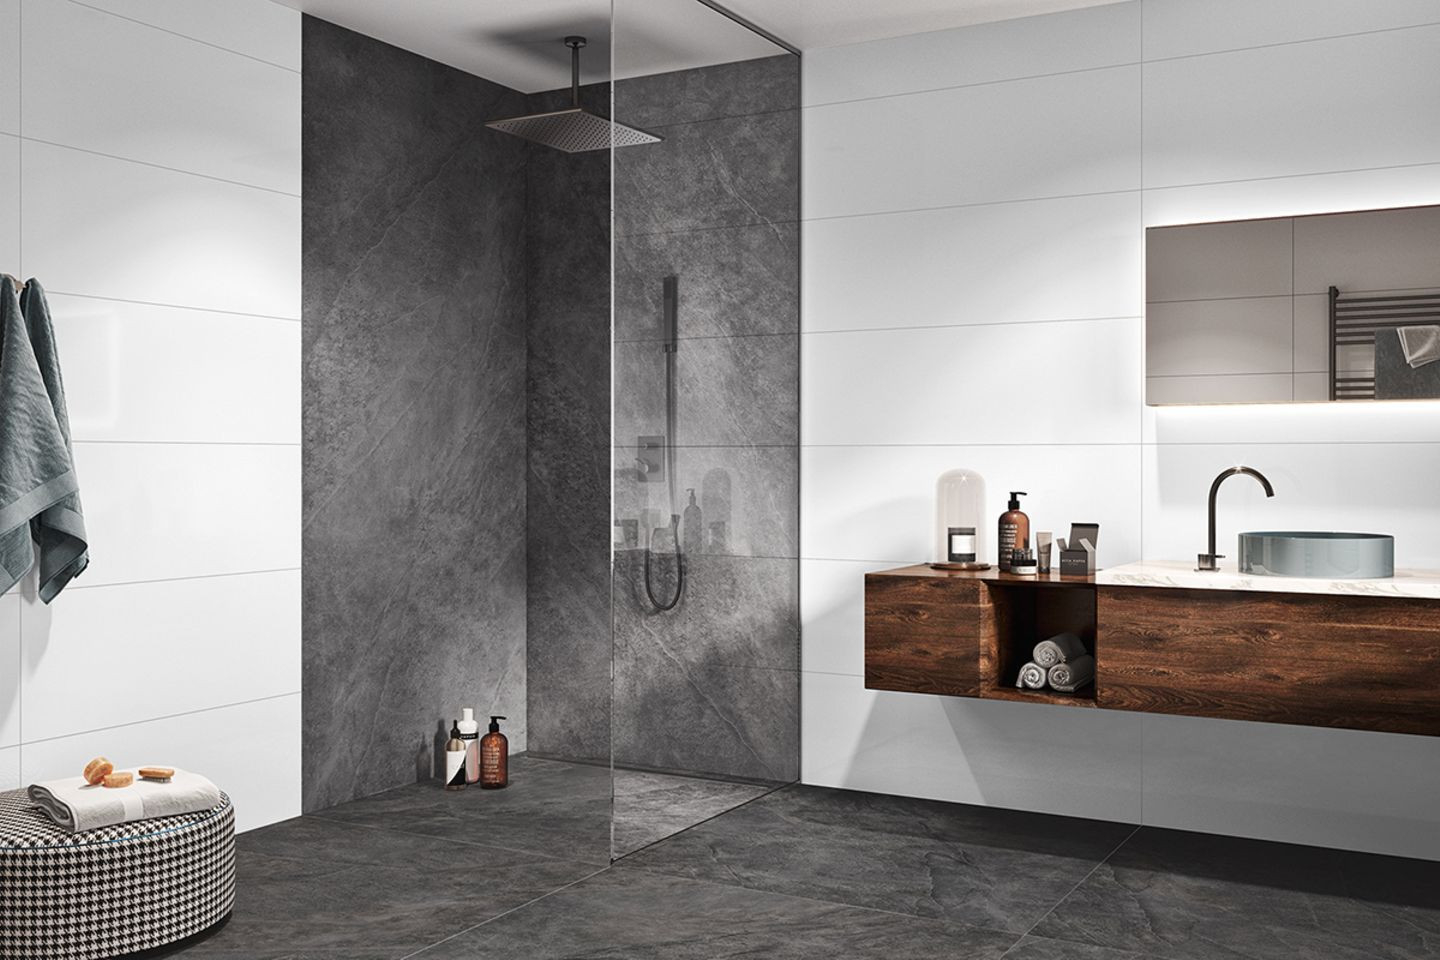 Kontrastreiche Dusche In Grau Und Weiß - [Schöner Wohnen] throughout Badezimmer Fliesen Weiß Grau